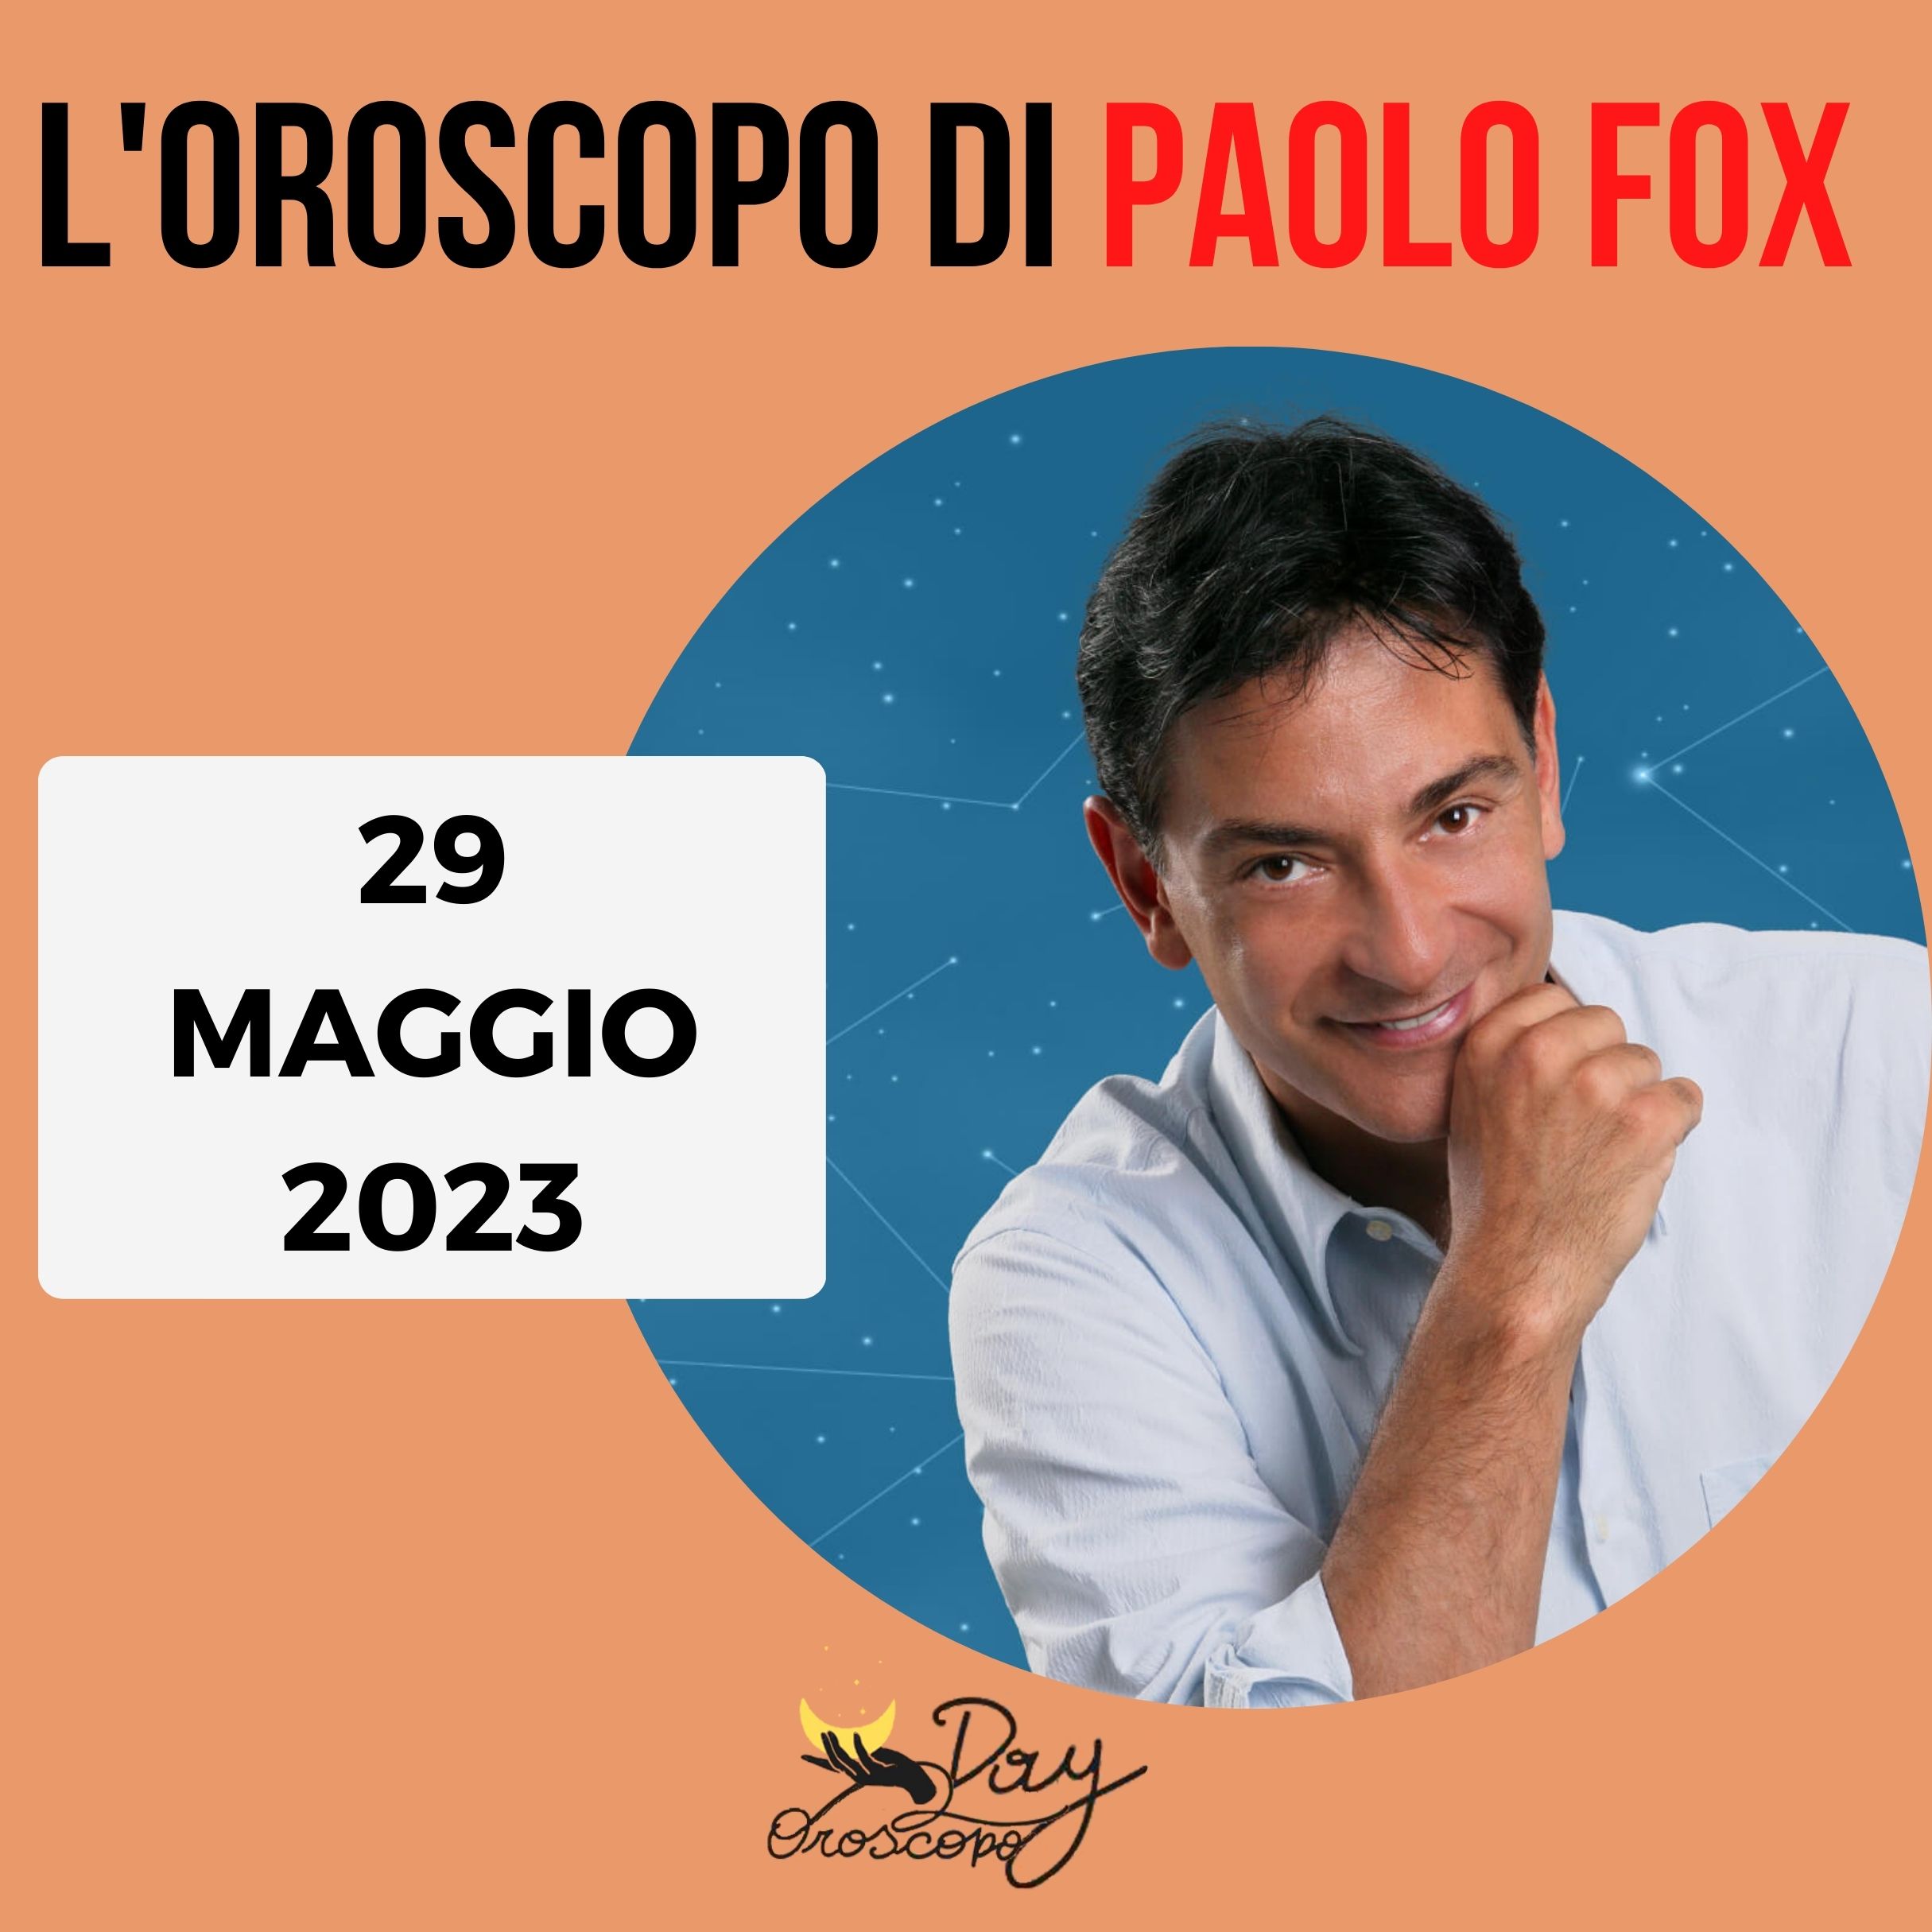 Oroscopo oggi domani Paolo Fox 29 maggio 2023